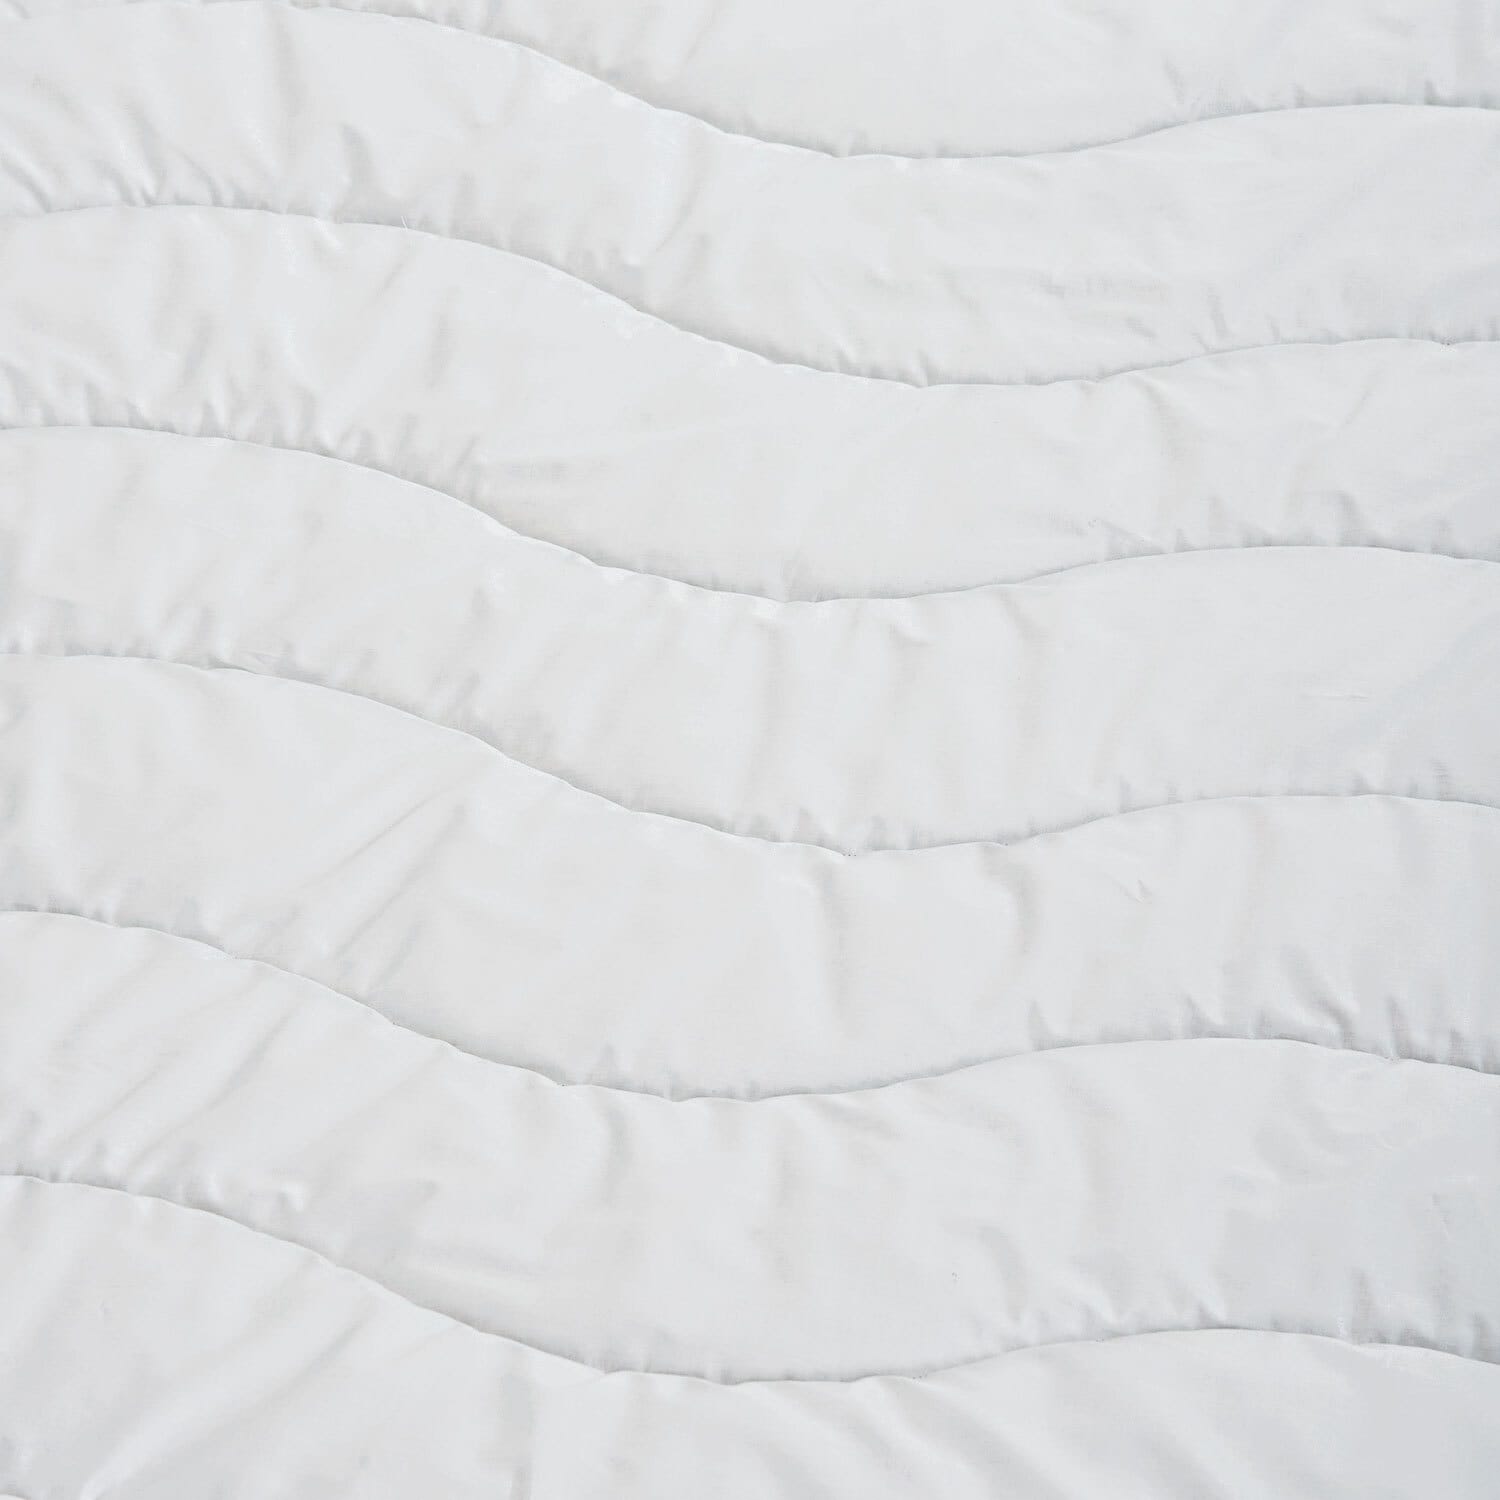 Schlafmond Tussah-Wildseiden-Leichtdecke DREAM 135 x 200 cm 450 g weiß